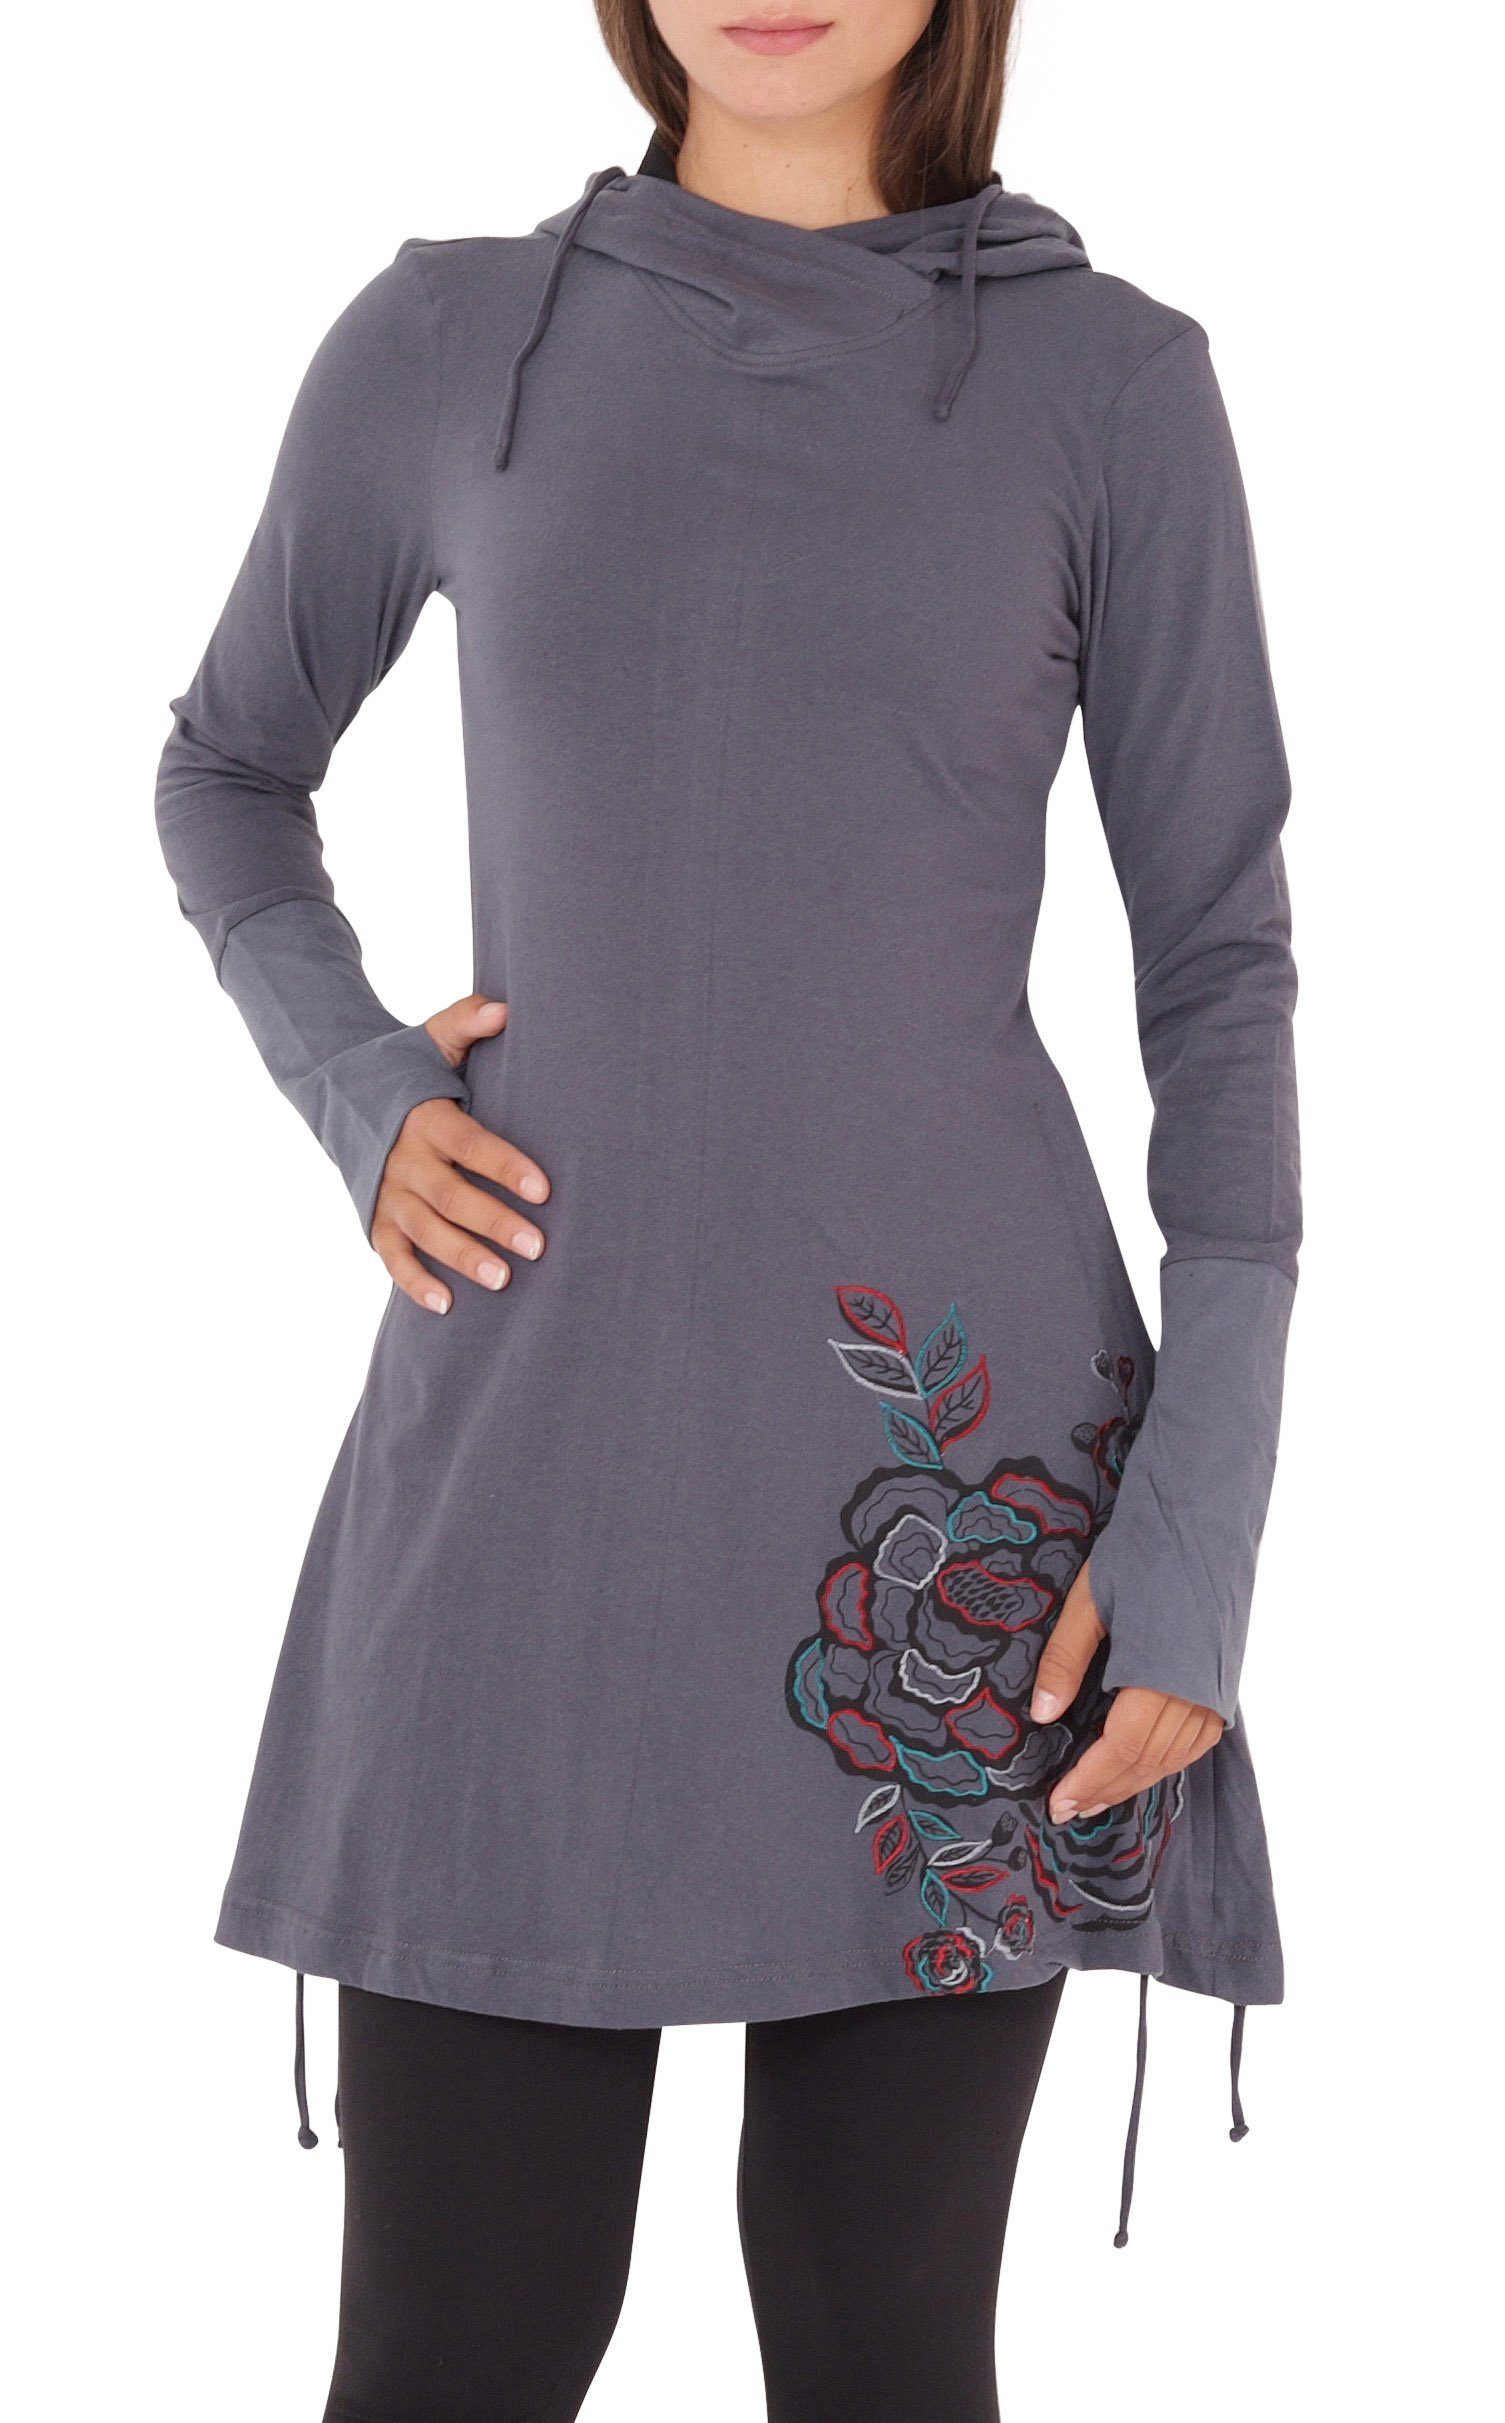 PUREWONDER A-Linien-Kleid Kapuzenkleid mit Blumen-Print Grau dr132 Jersey